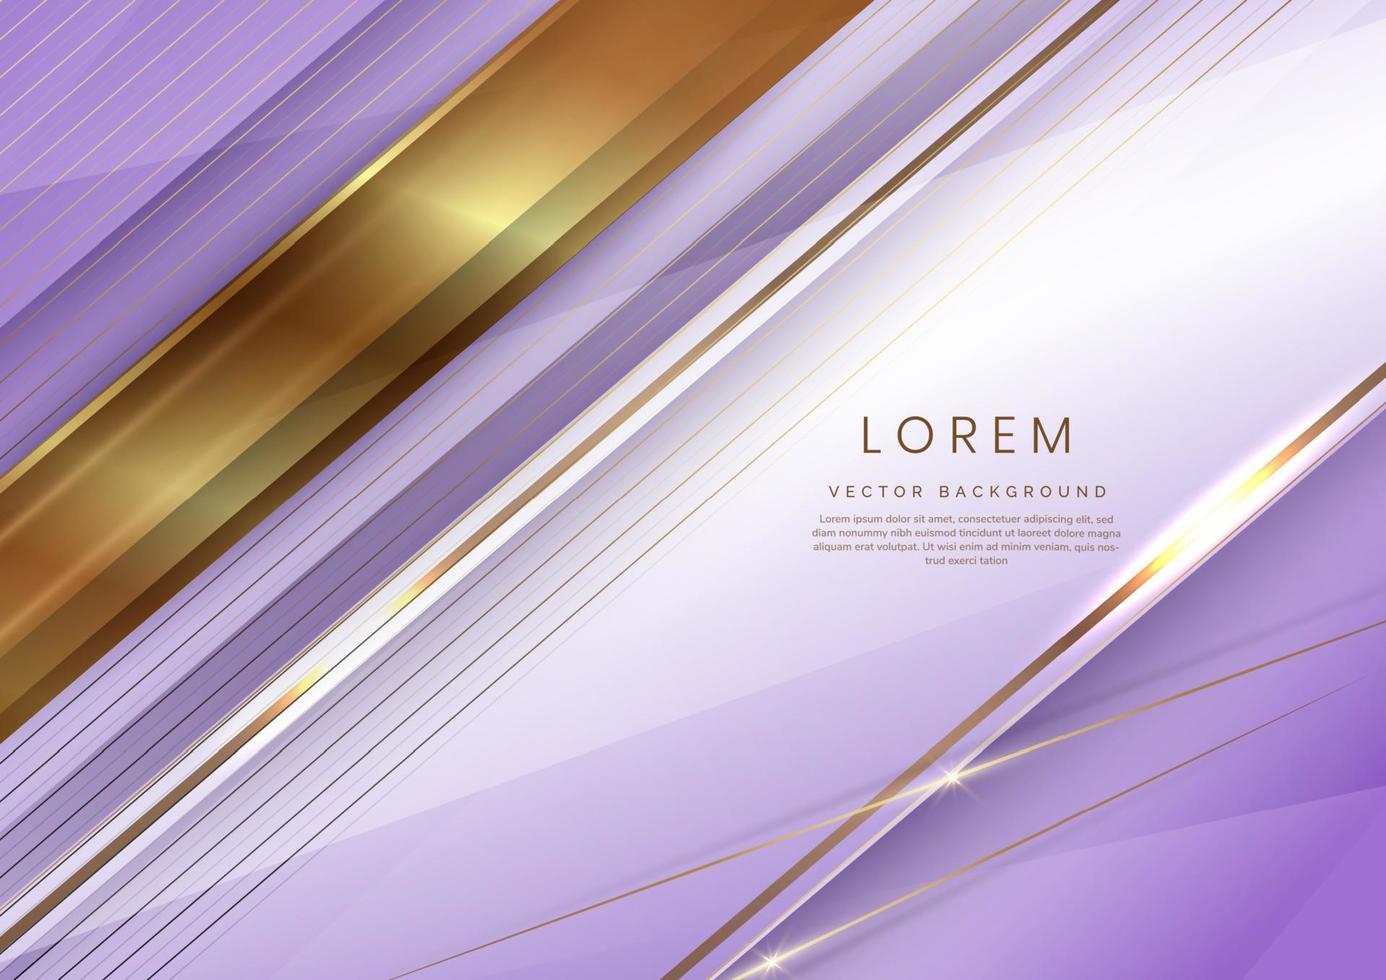 fondo de capa de superposición diagonal geométrica elegante blanco y púrpura suave de lujo abstracto con líneas doradas. vector